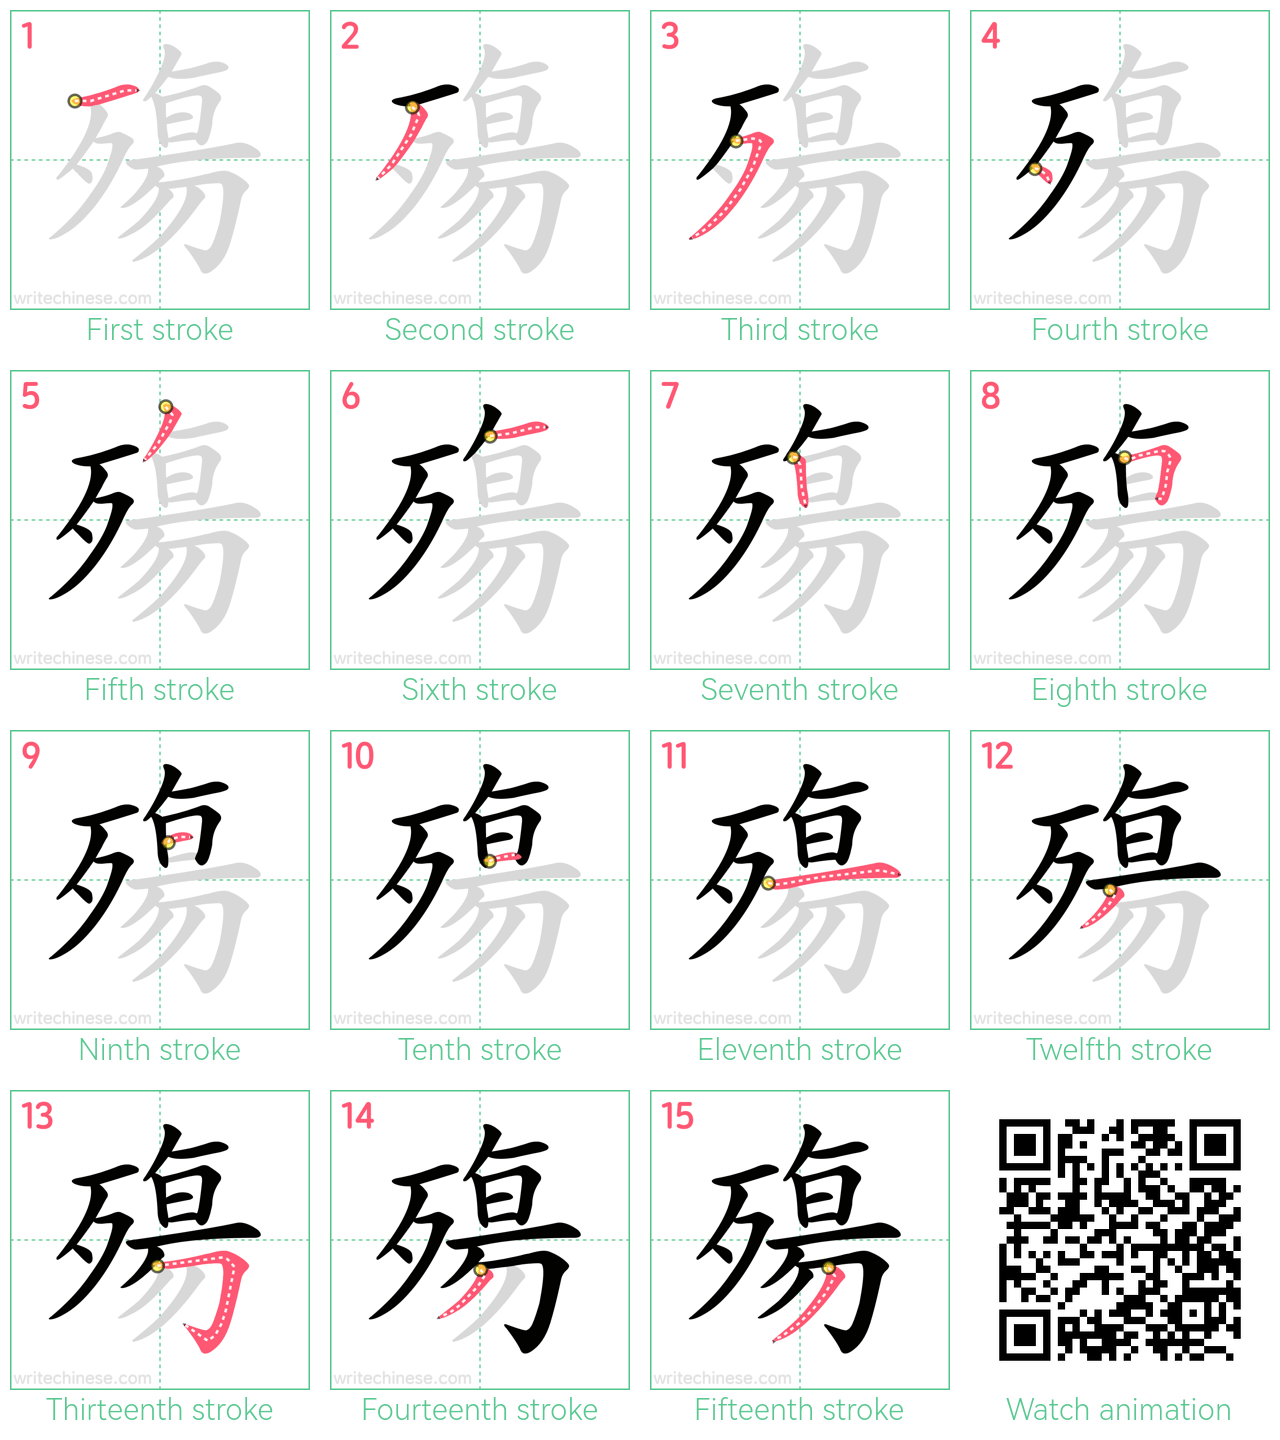 殤 step-by-step stroke order diagrams